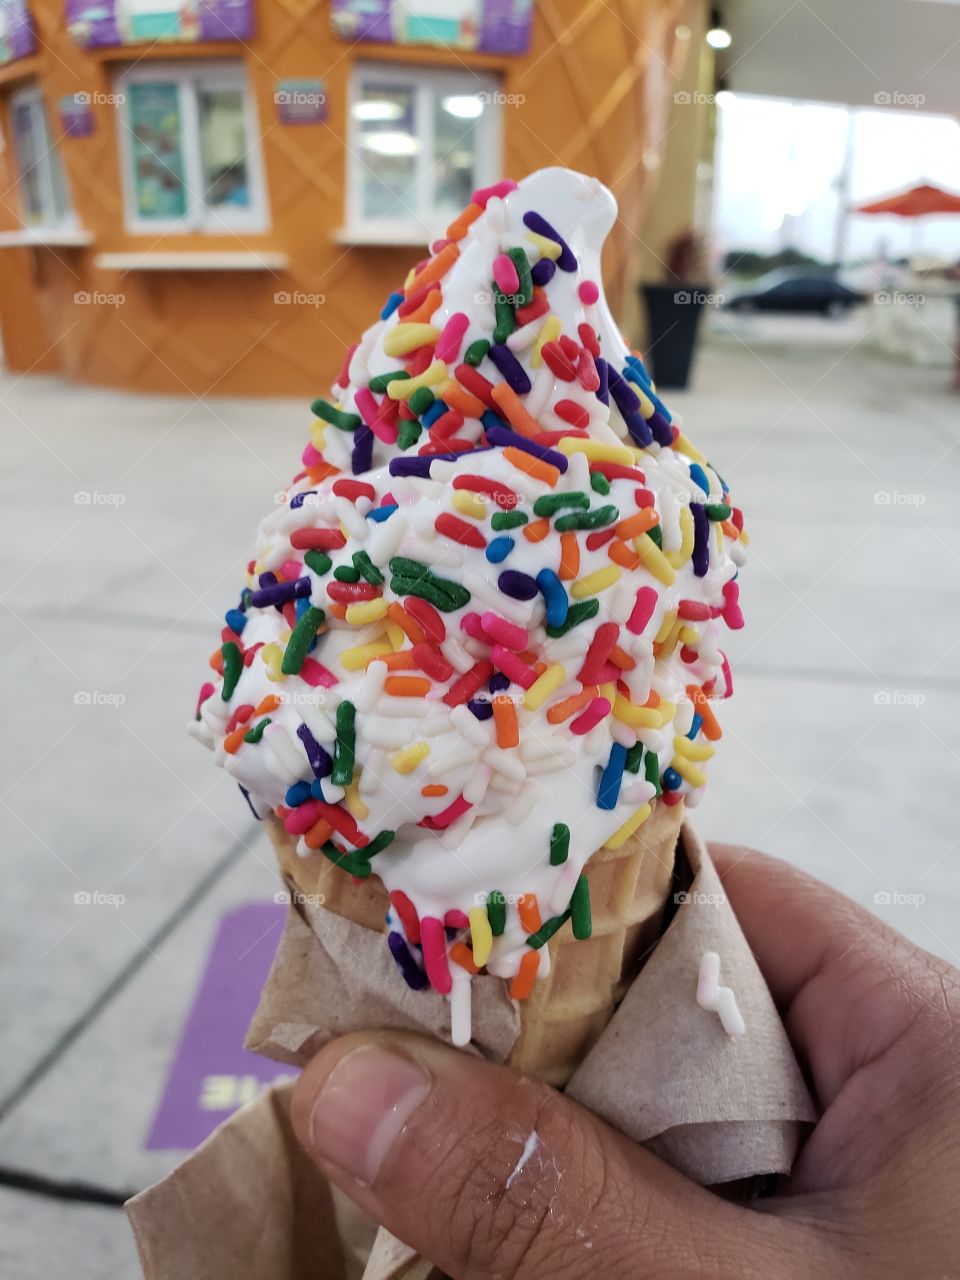 Ice cream dreams